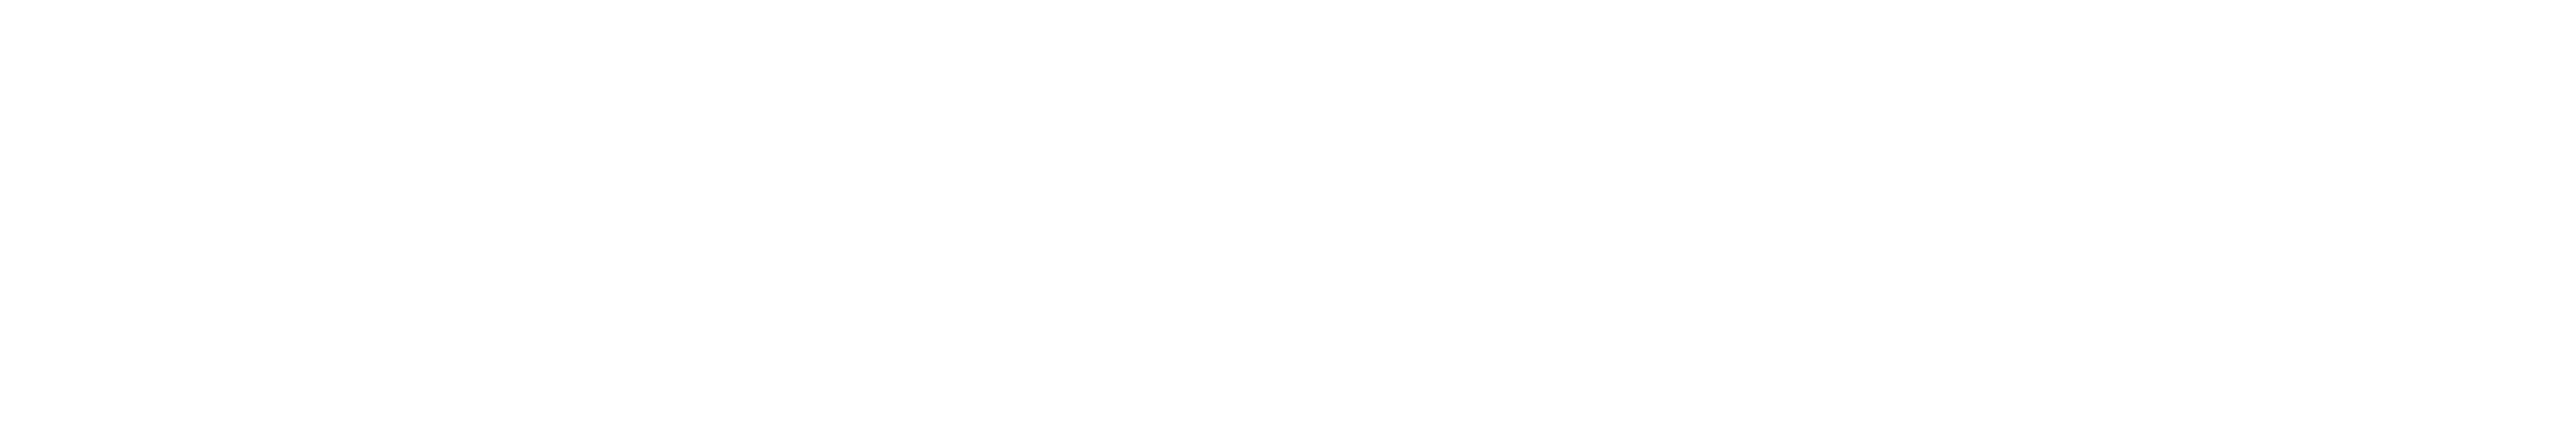 الاتحاد القطري لركوب الدراجات والترياتلون